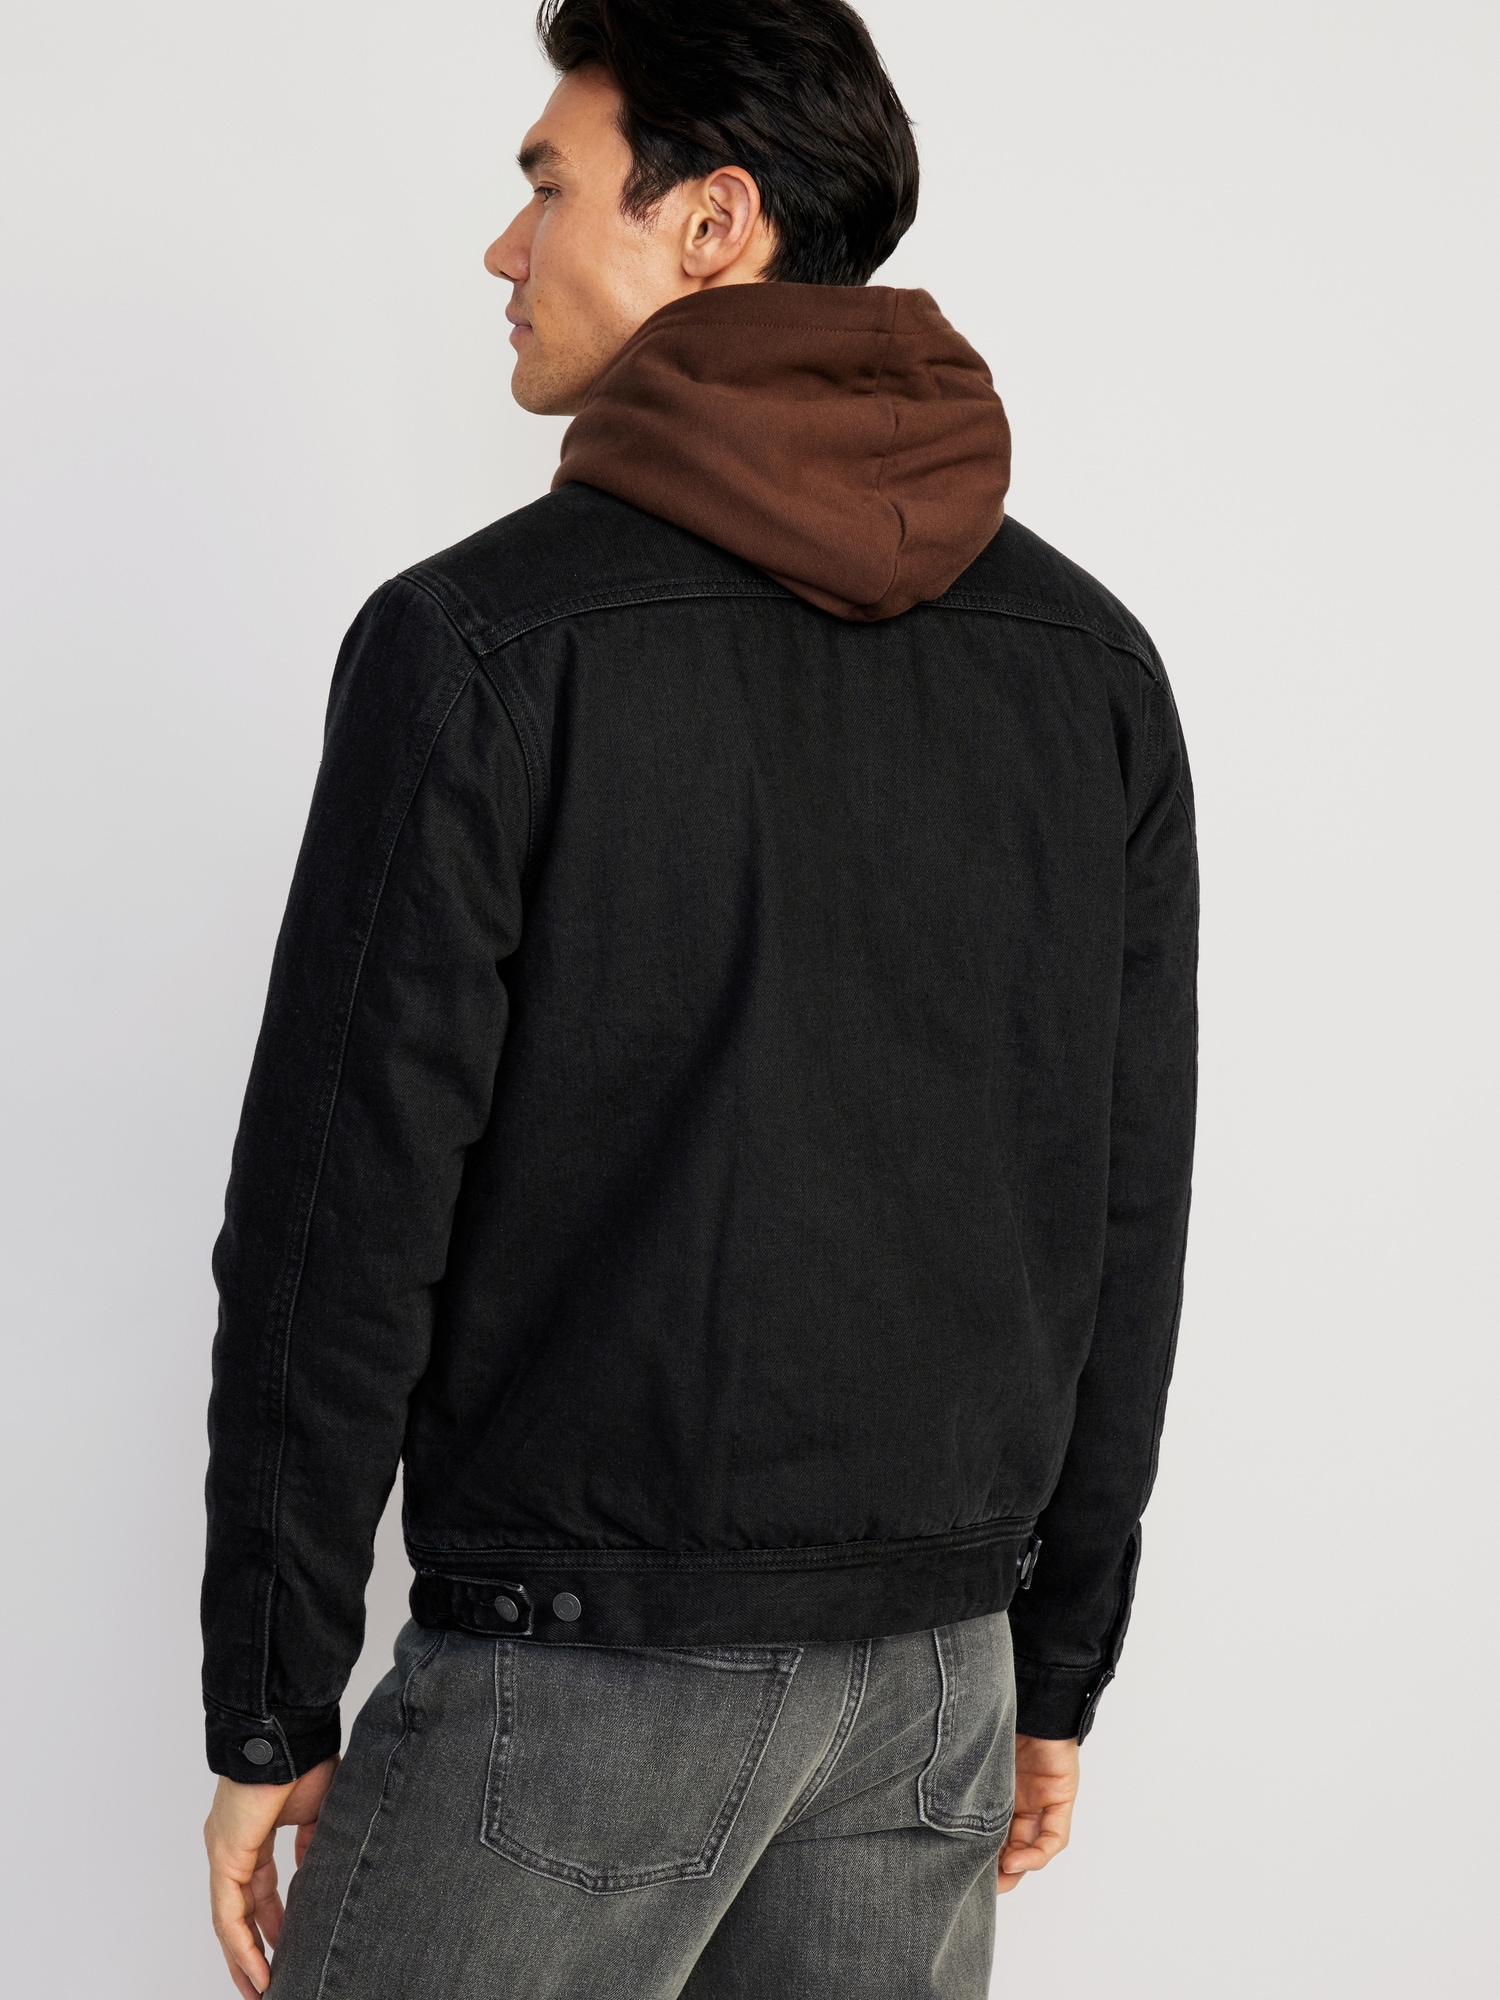 Winter Men's Jean Jacket Fur Collar Fleece Lined Fashion Casual Denim Warm  Coat | eBay